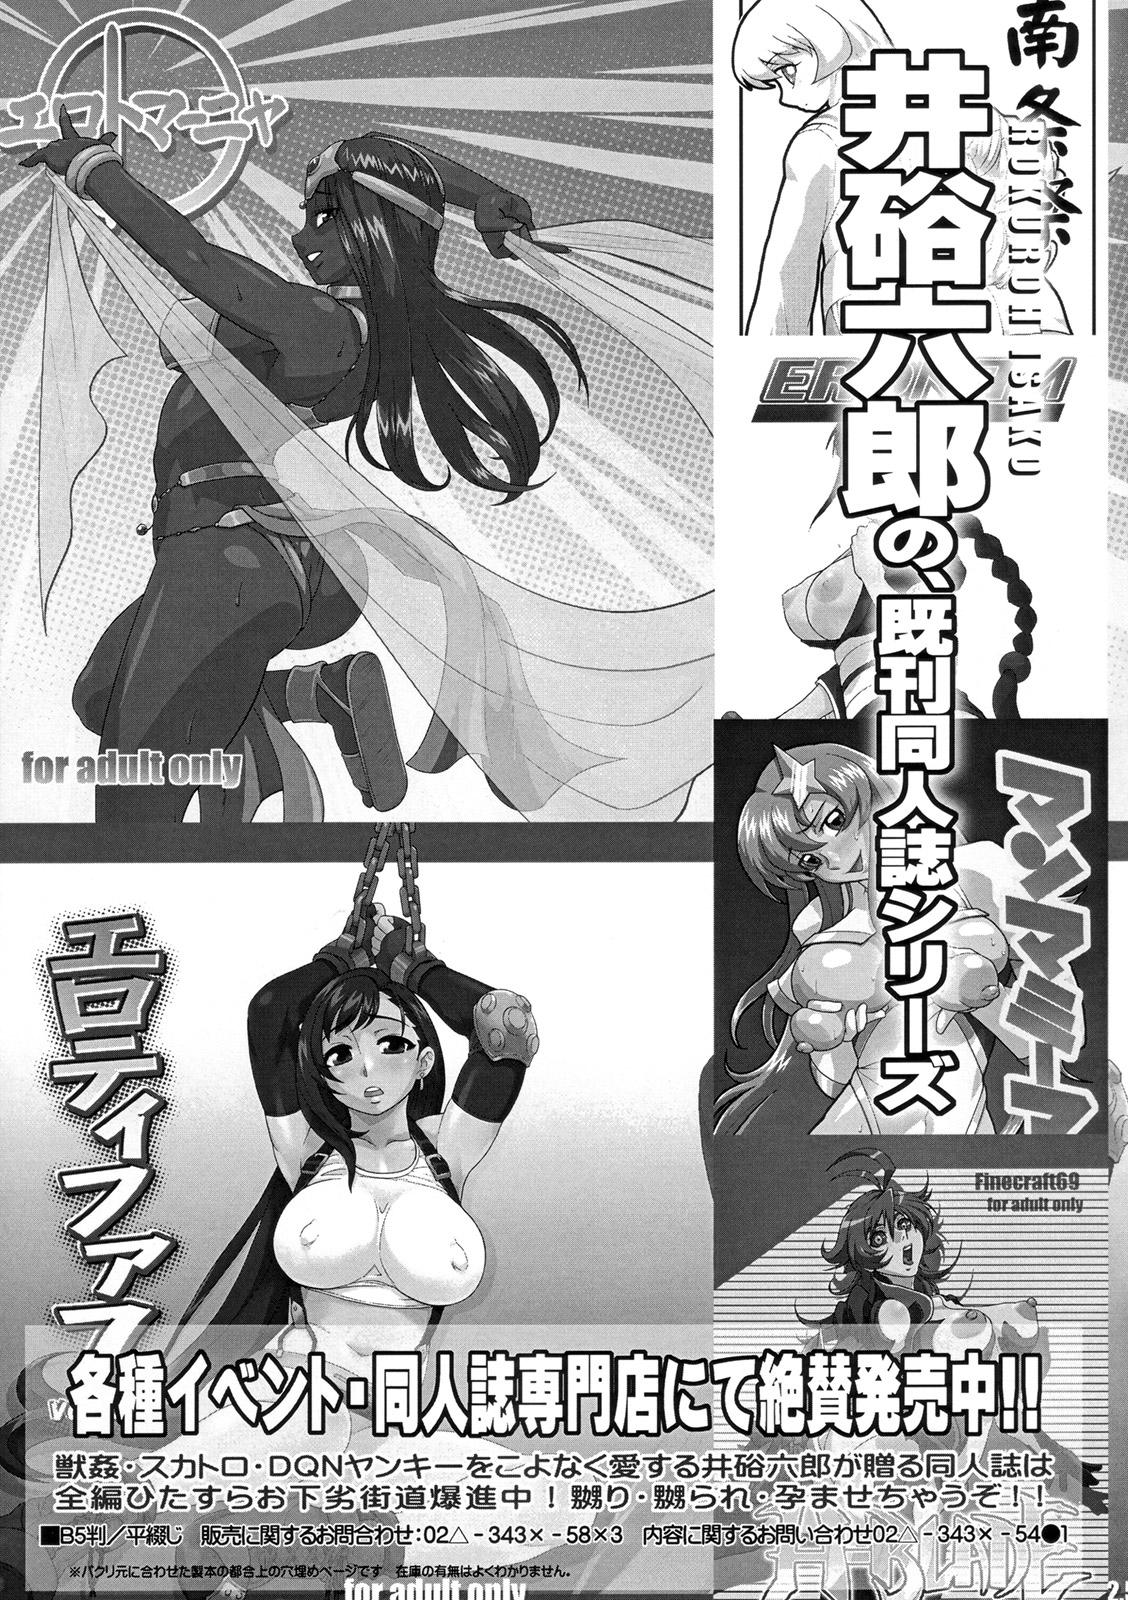 Putita Comic Motto Milk - Dragon quest Ar tonelico Princess lover Persona Big Butt - Page 8